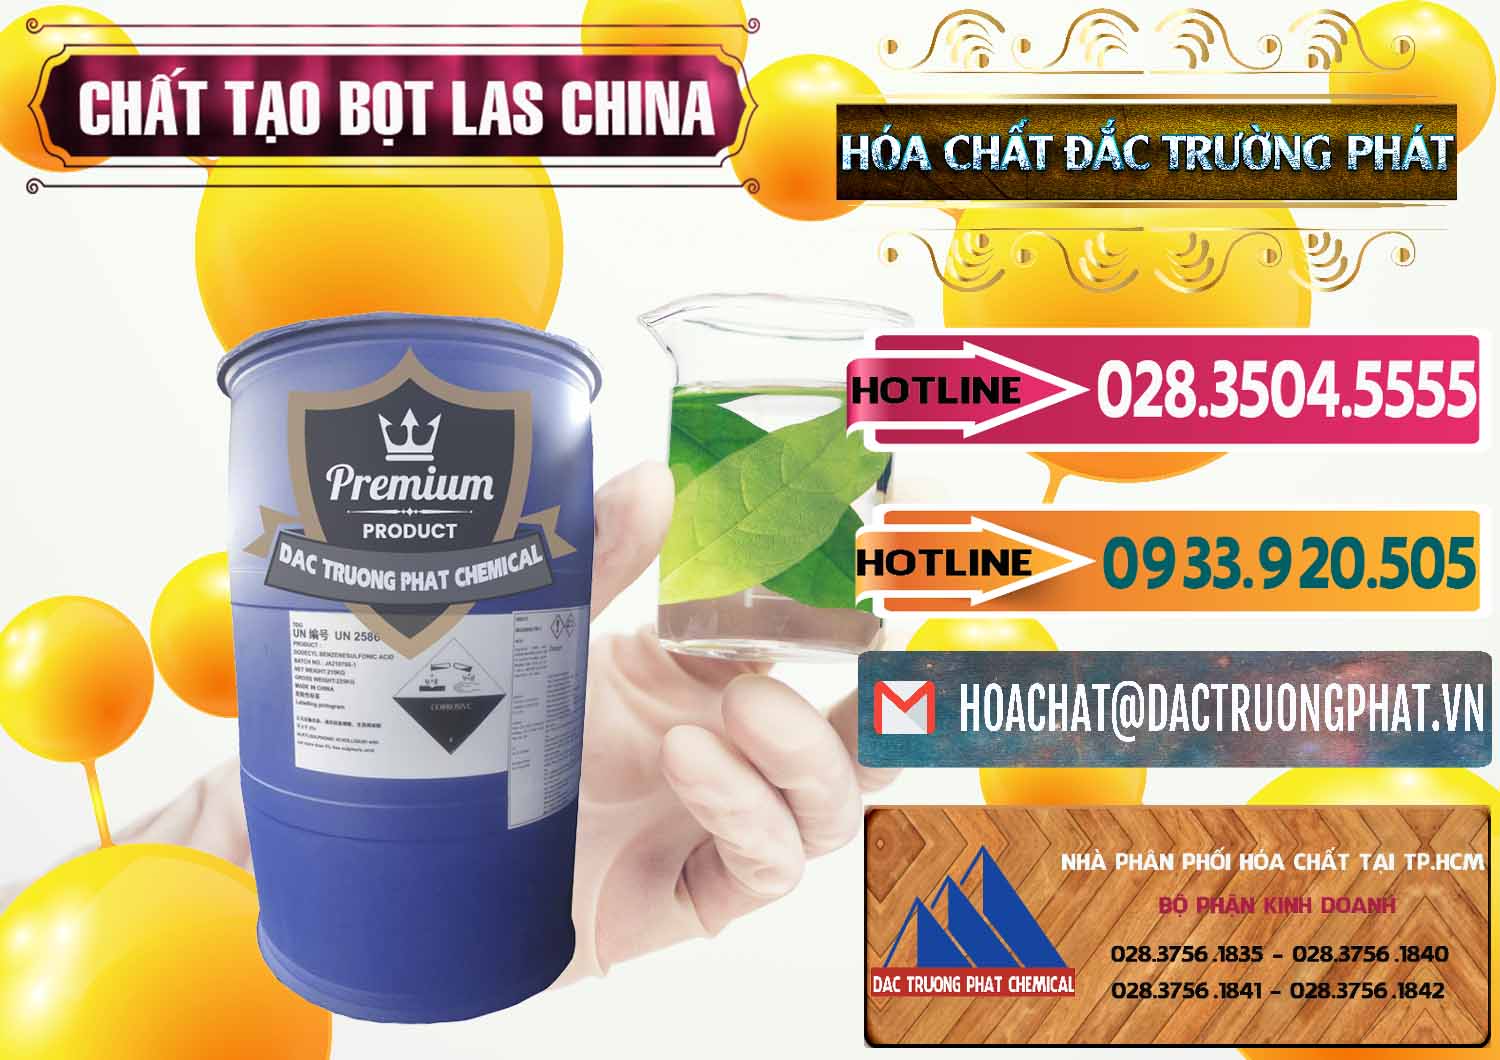 Cty bán - phân phối Chất tạo bọt Las Trung Quốc China - 0451 - Cty cung cấp và nhập khẩu hóa chất tại TP.HCM - dactruongphat.vn